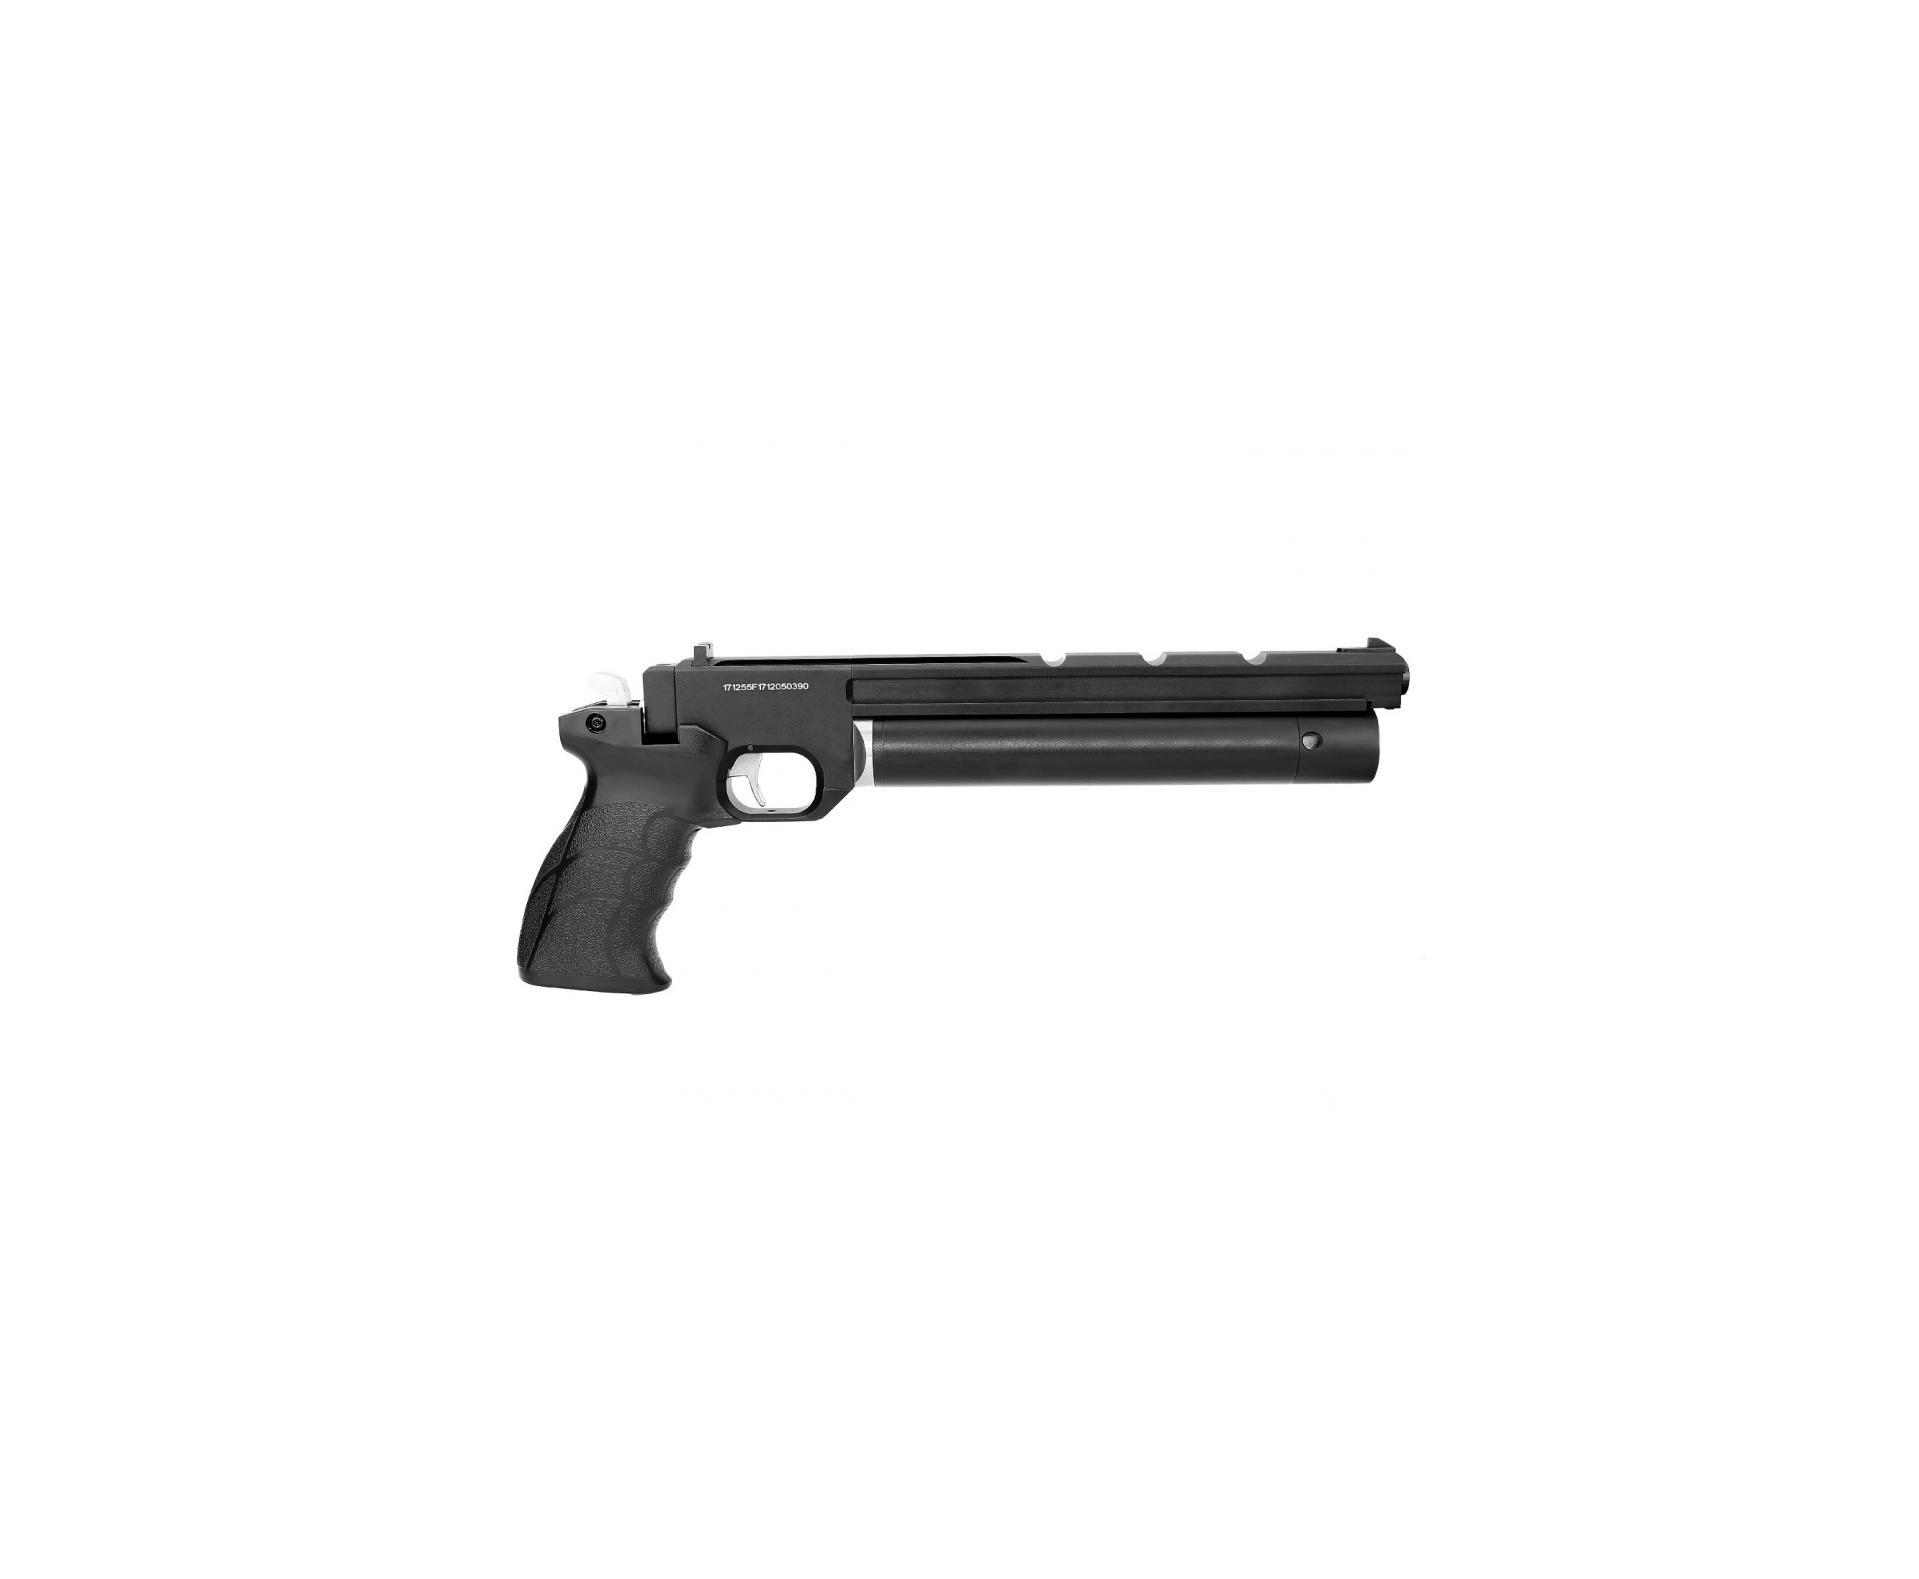 Pistola De Pressão Pcp Pp700s-a Olimpic 4.5mm Artemis